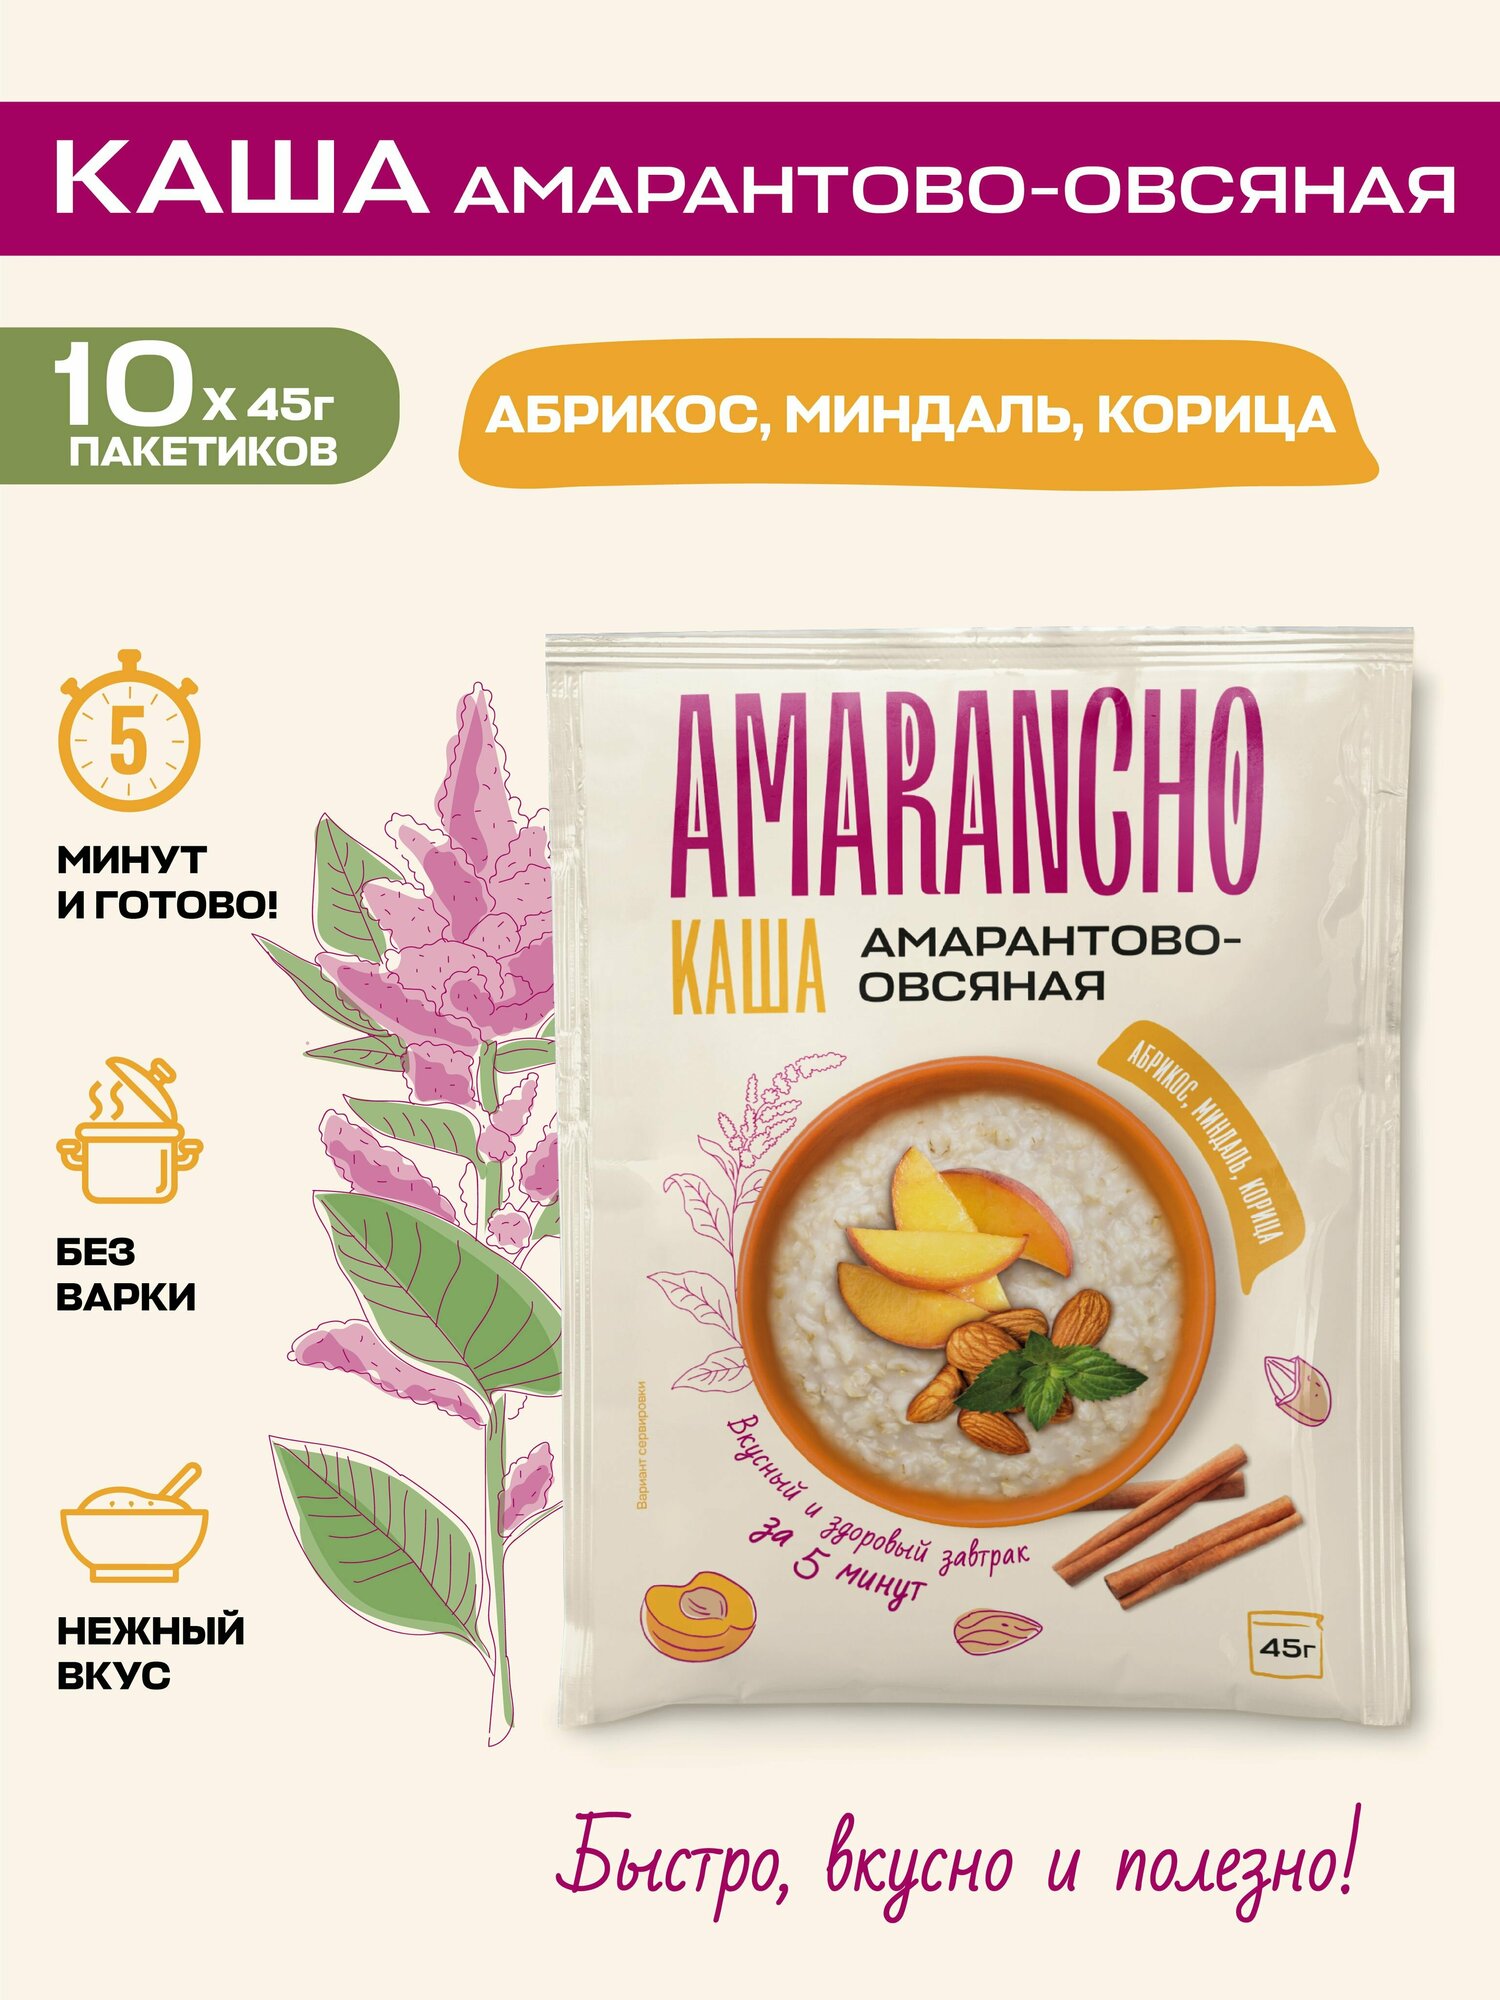 Каша с абрикосом, миндалем, кардамоном и корицей амарантово-овсяная быстрого приготовления Amarancho